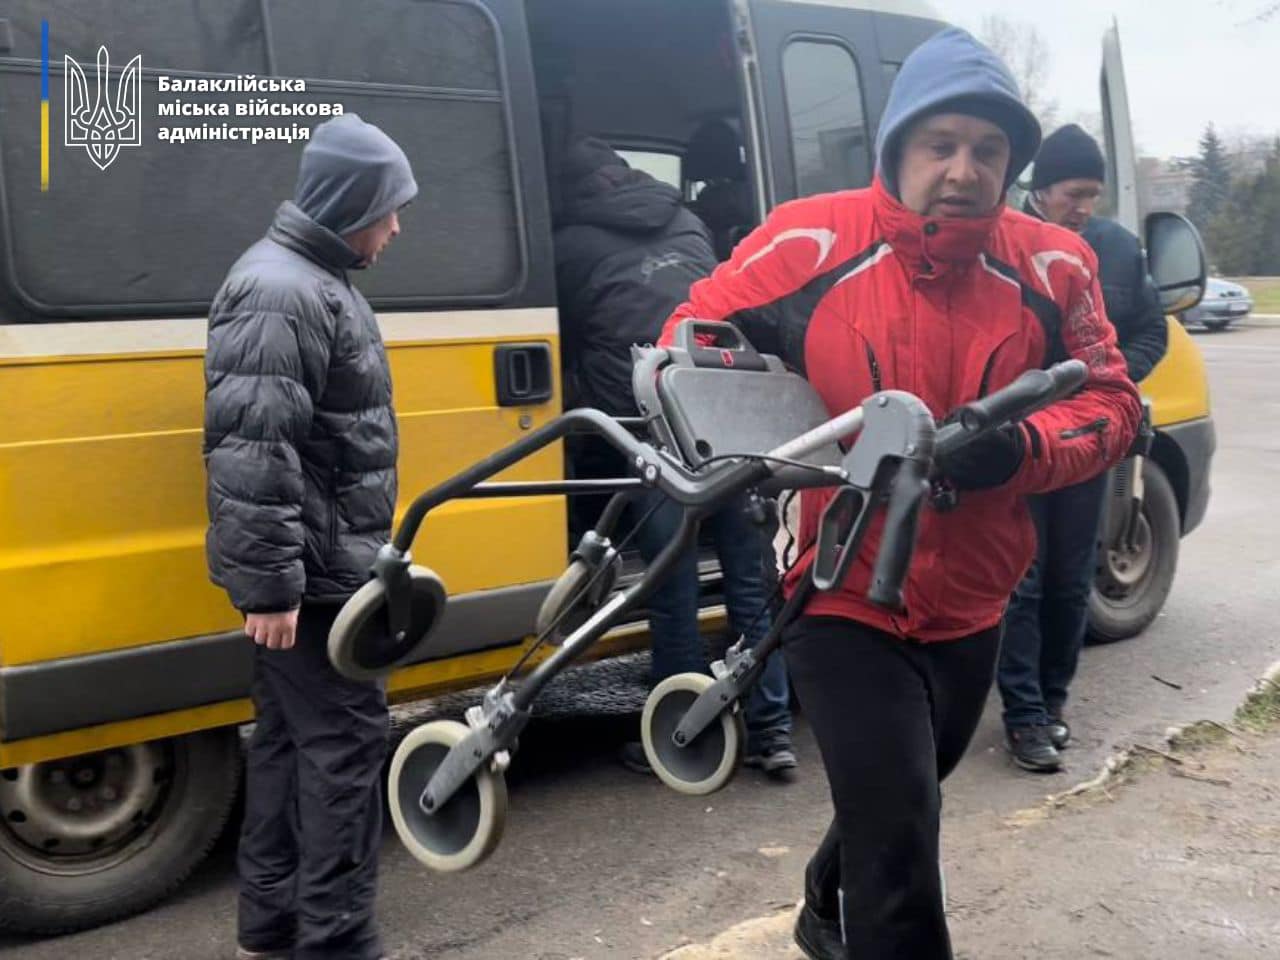 Розвантаження гуманітарного вантажу у Балаклії Харківської області 